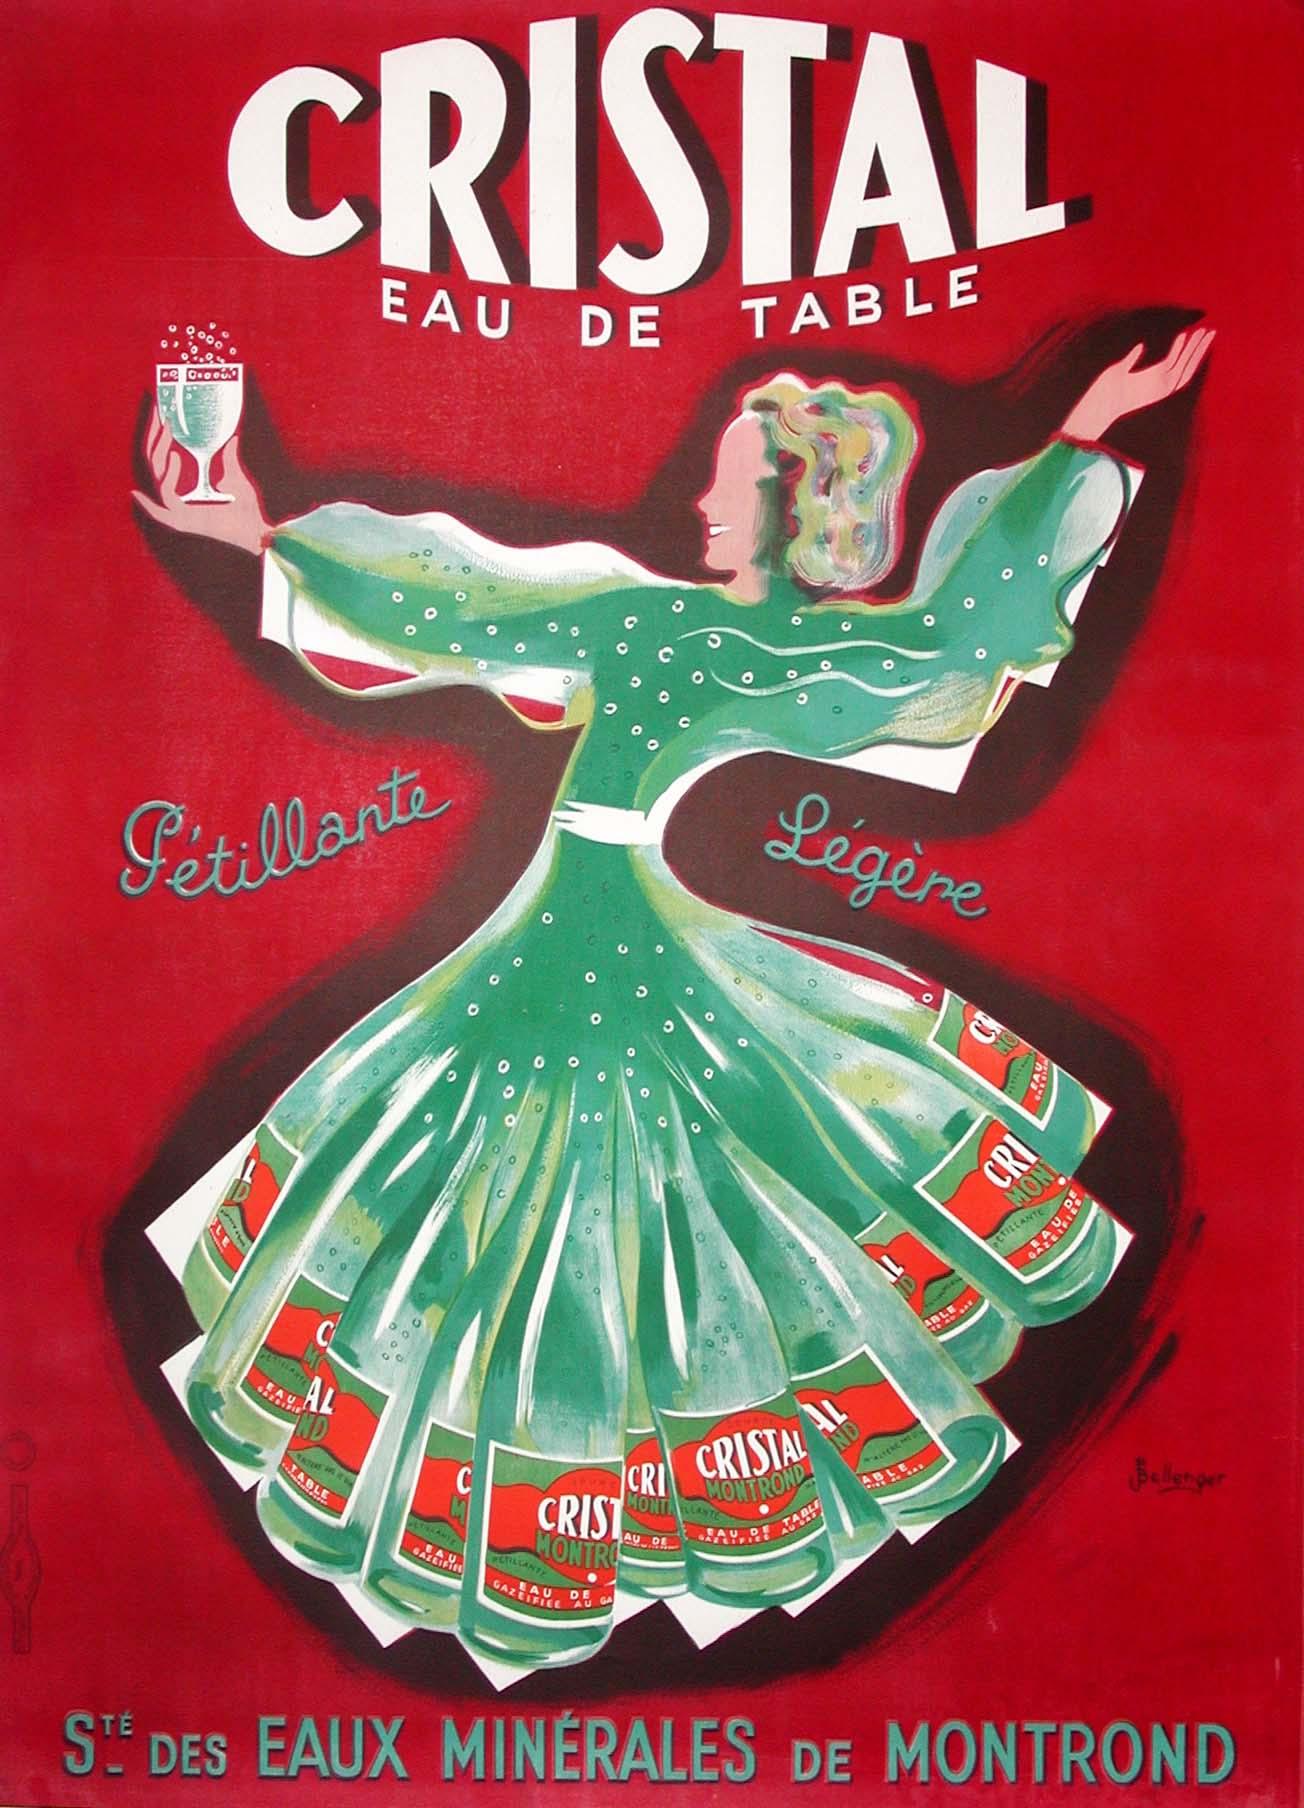 "Cristal Eau de Table" Original Vintage Beverage Poster - Print by Pierre and Jacques Bellenger